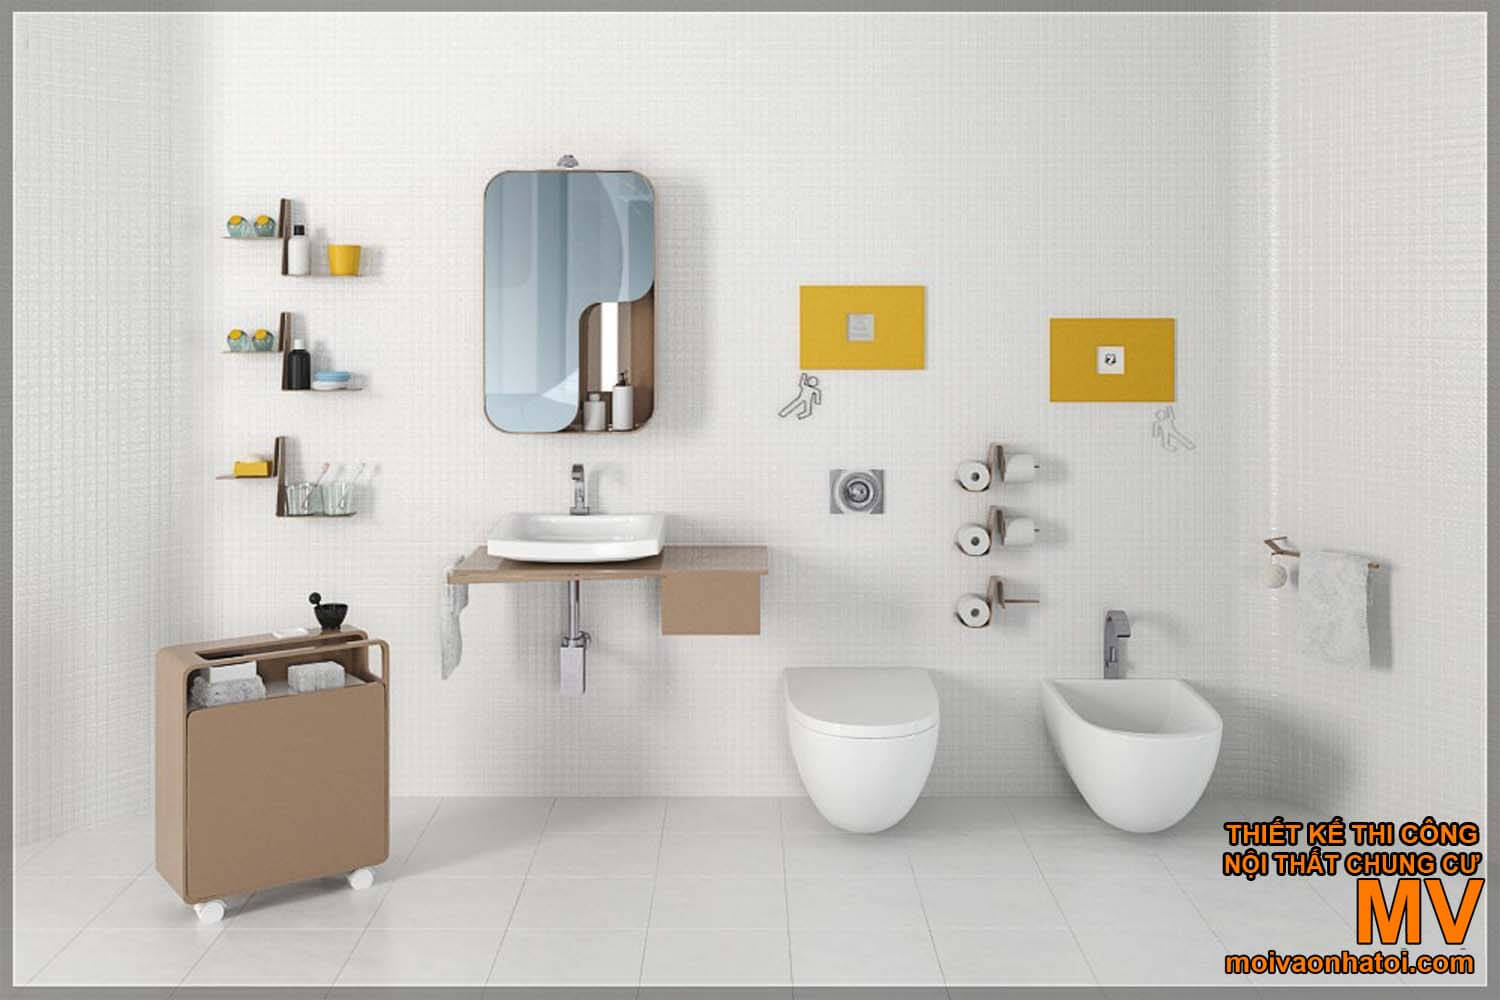 миття обличчя лавабо, гарний сучасний дизайн ванної кімнати